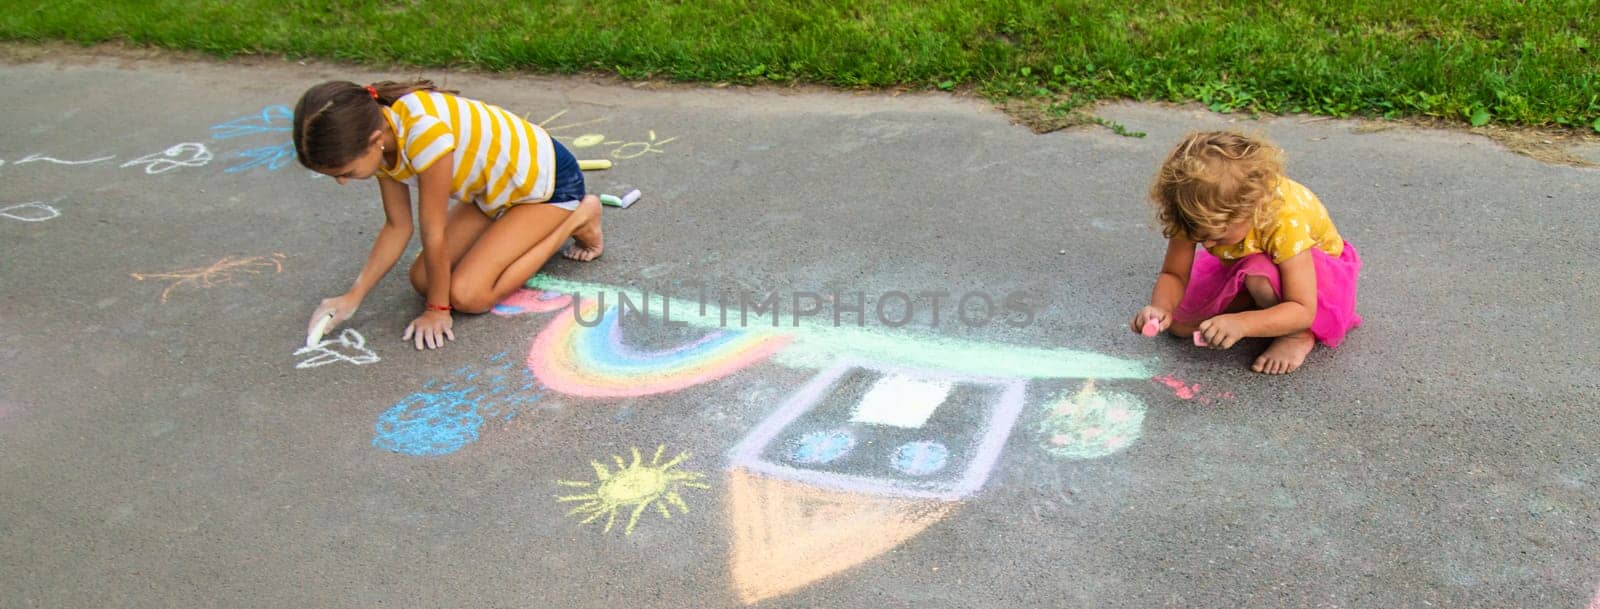 A child draws a house and a rainbow on the asphalt with chalk. Selective focus. by yanadjana